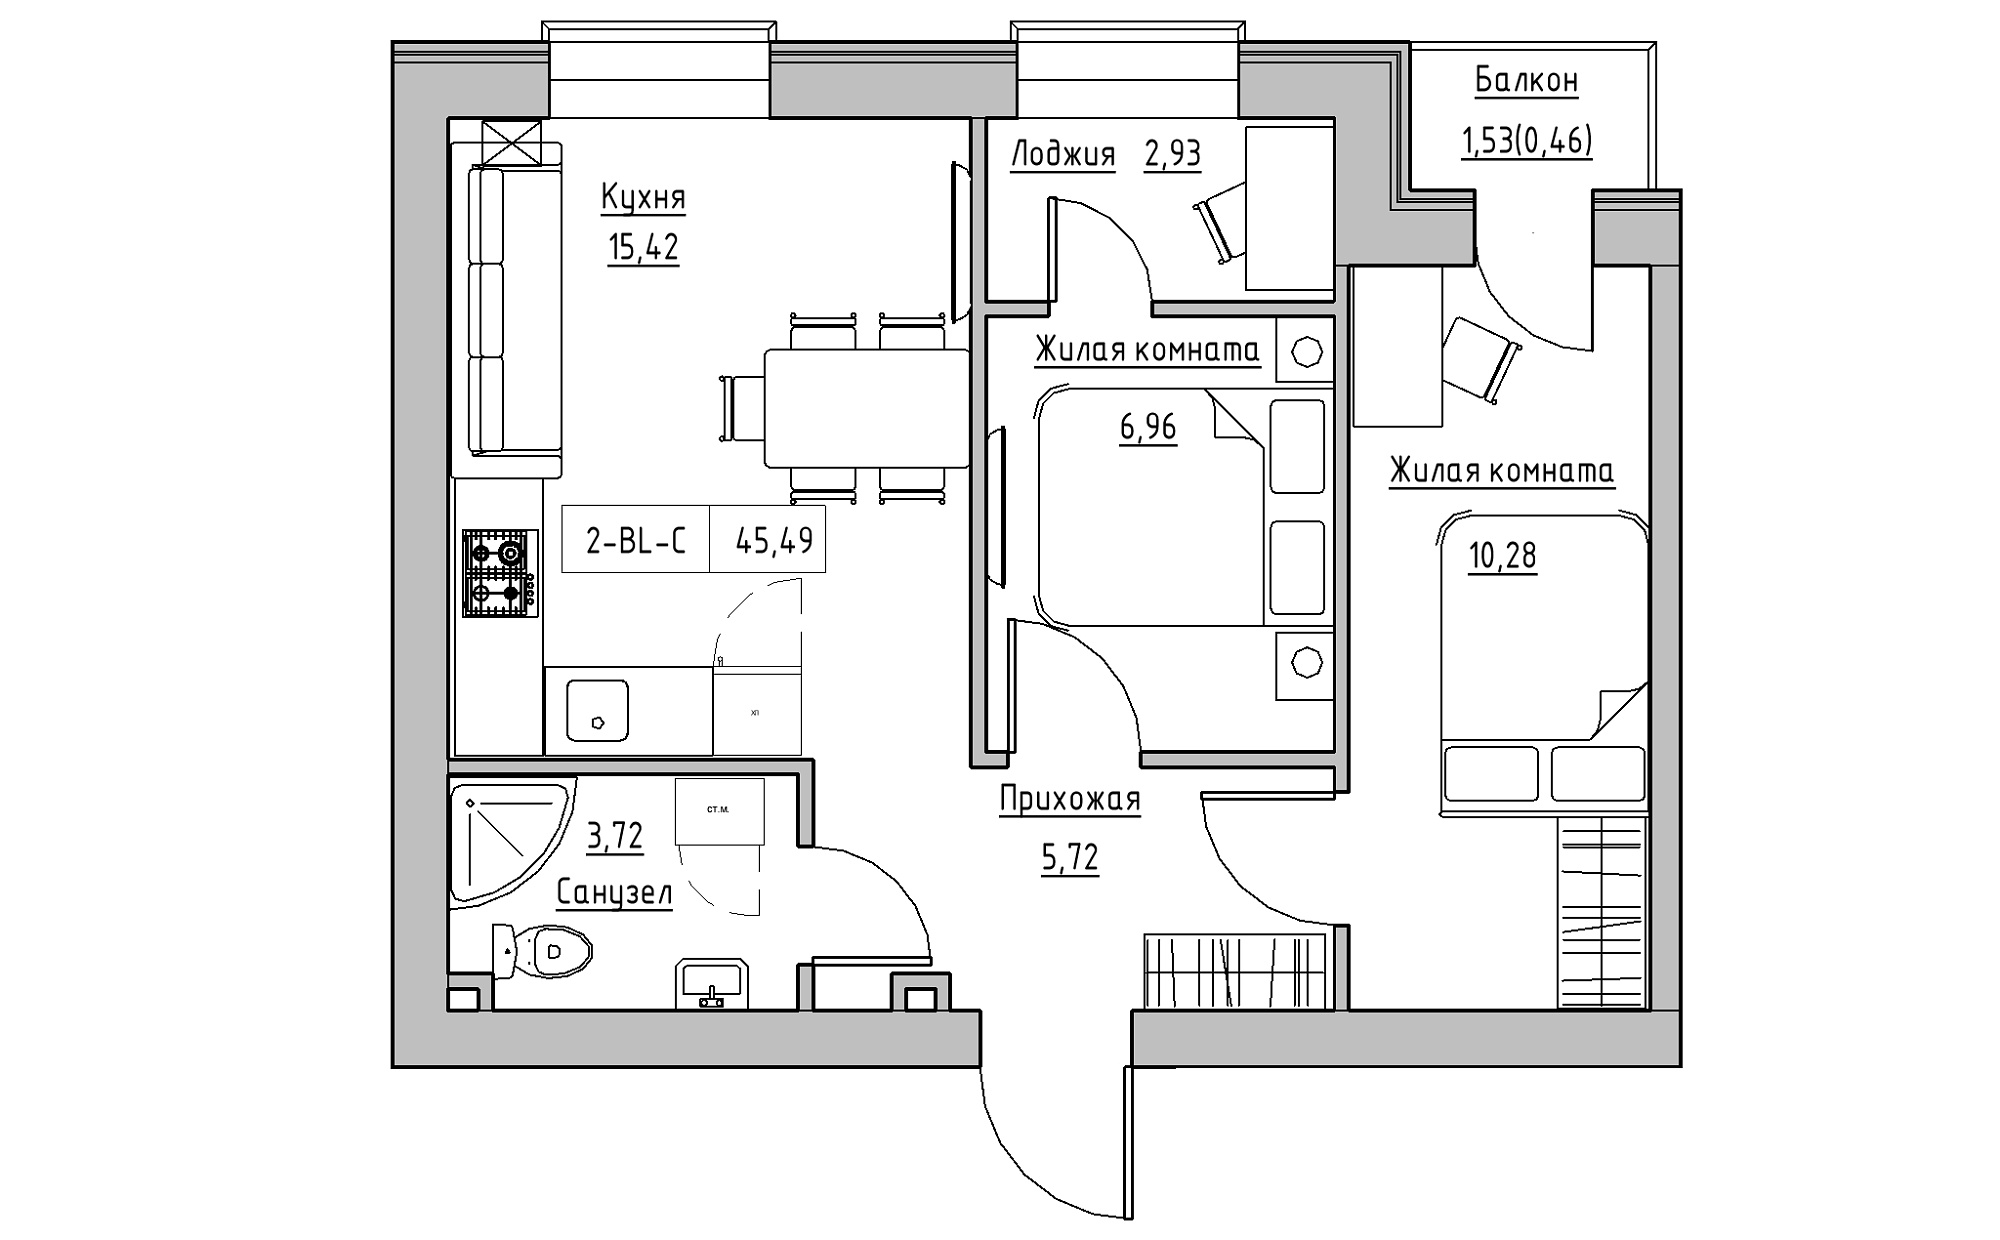 Планировка 2-к квартира площей 45.49м2, KS-022-04/0008.